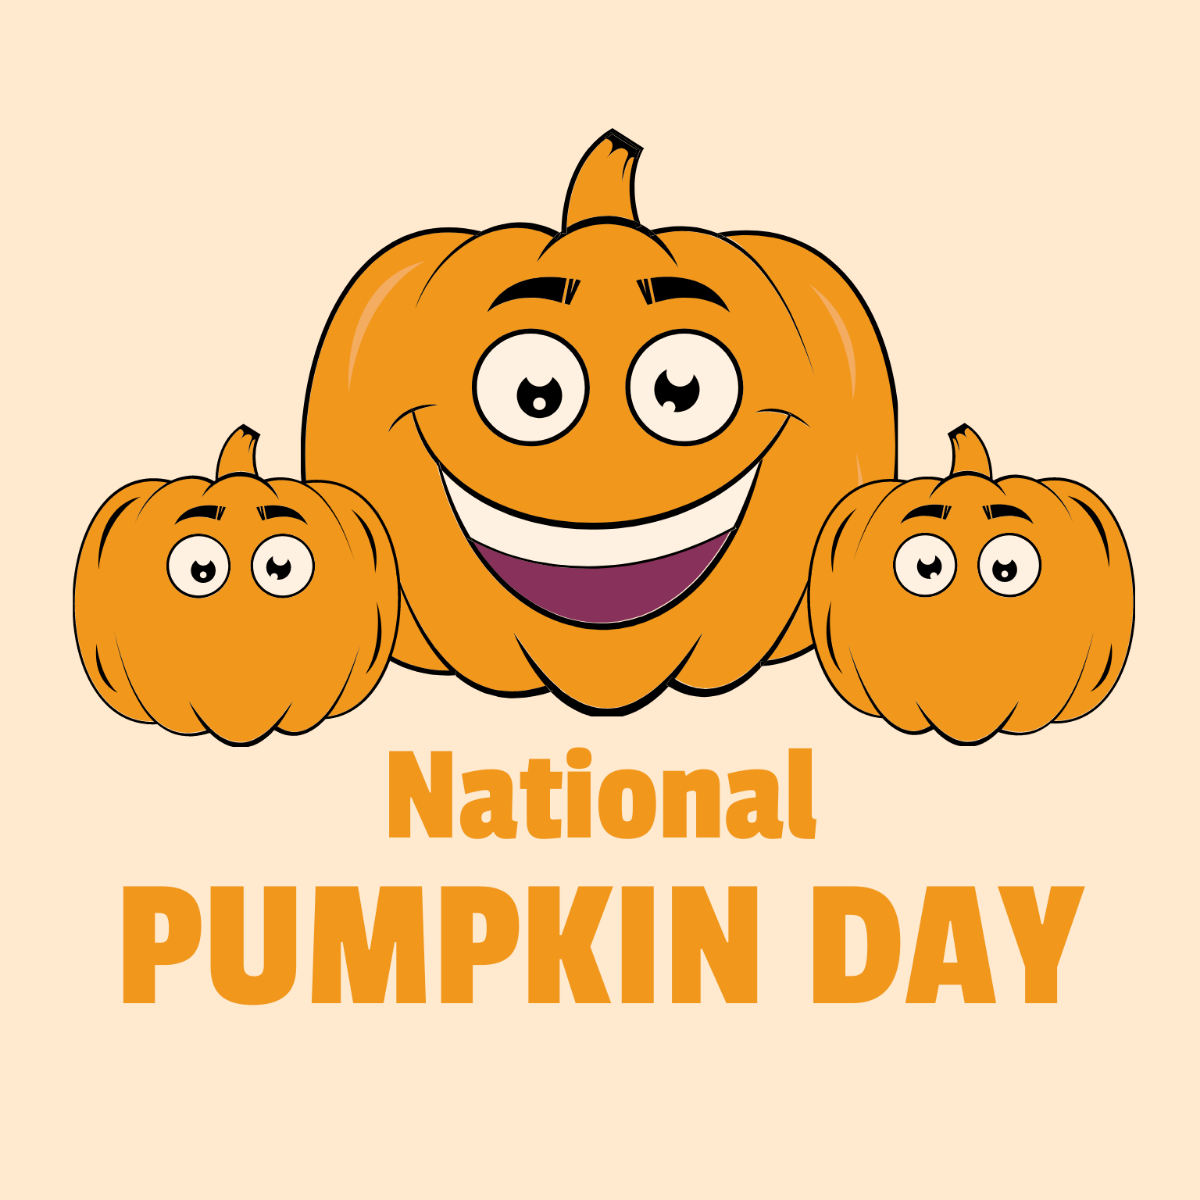 Free National Pumpkin Day Cartoon Vector Template